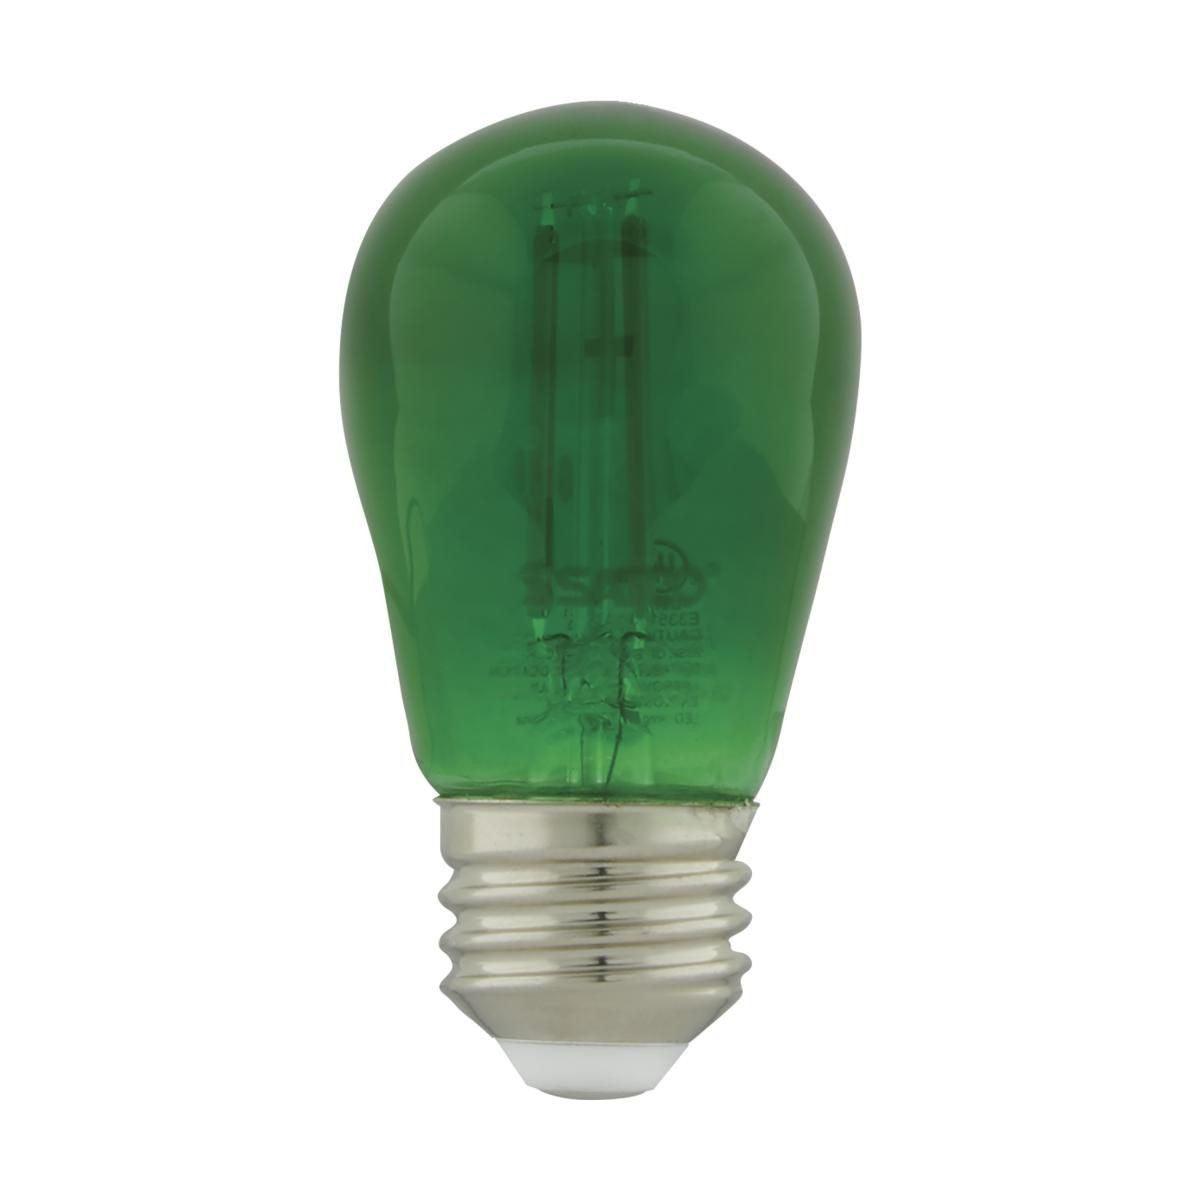 LED S14 Straight Tapered Bulb, 1 Watt, 30 Lumens, Green, E26 Medium Base, Green Finish, Pack Of 4 - Bees Lighting